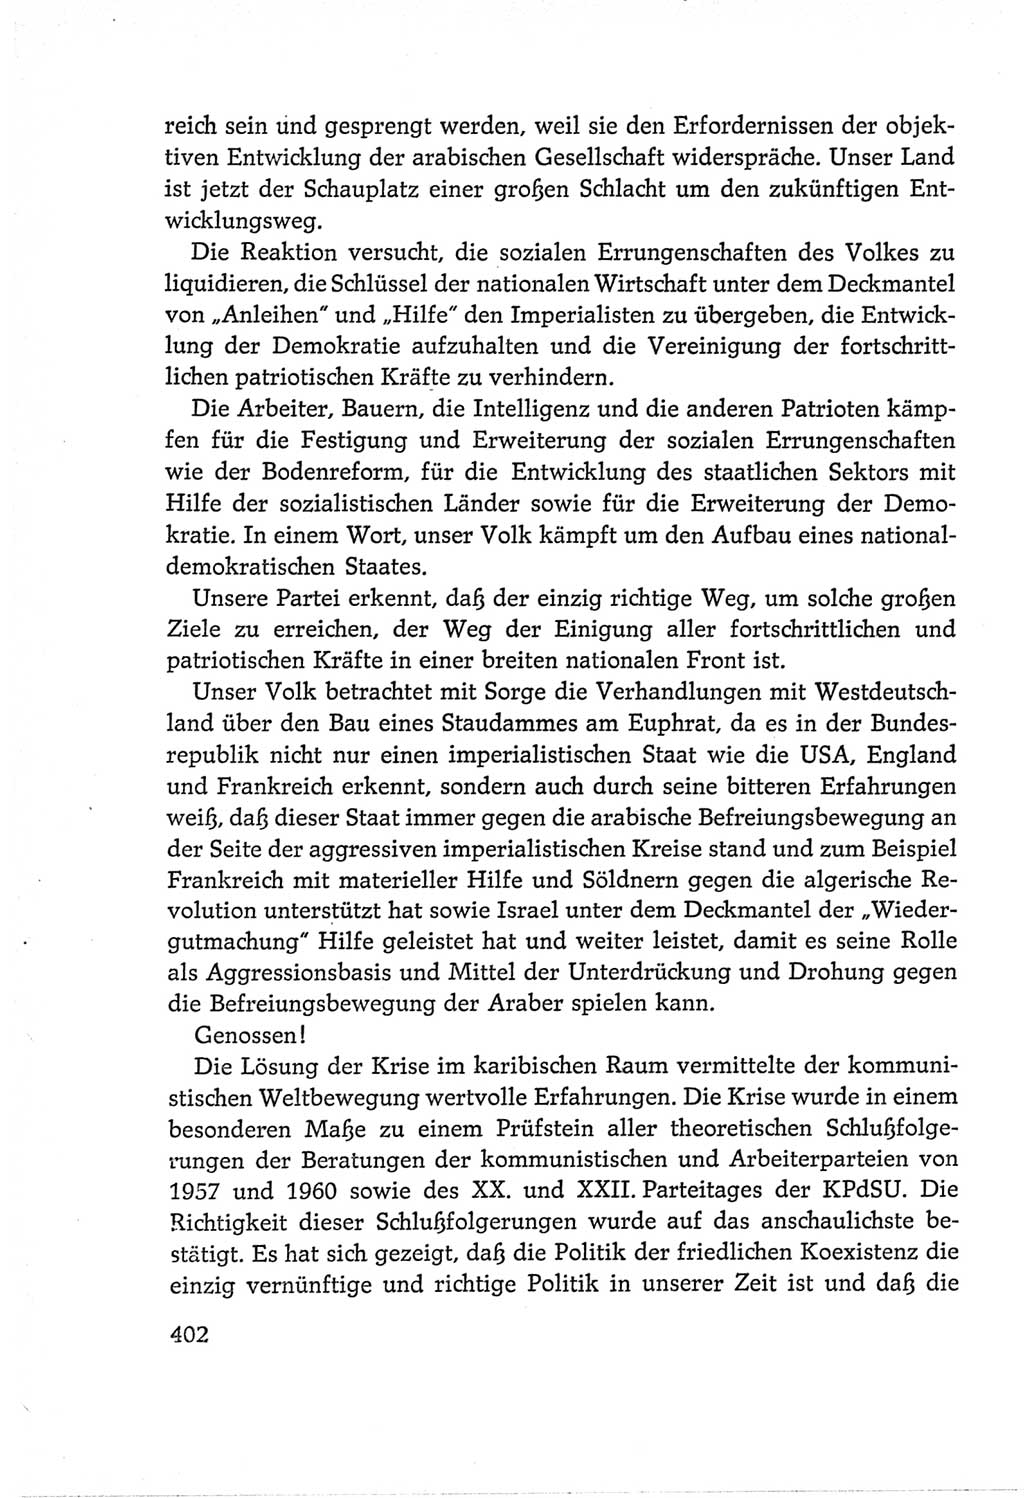 Protokoll der Verhandlungen des Ⅵ. Parteitages der Sozialistischen Einheitspartei Deutschlands (SED) [Deutsche Demokratische Republik (DDR)] 1963, Band Ⅱ, Seite 402 (Prot. Verh. Ⅵ. PT SED DDR 1963, Bd. Ⅱ, S. 402)